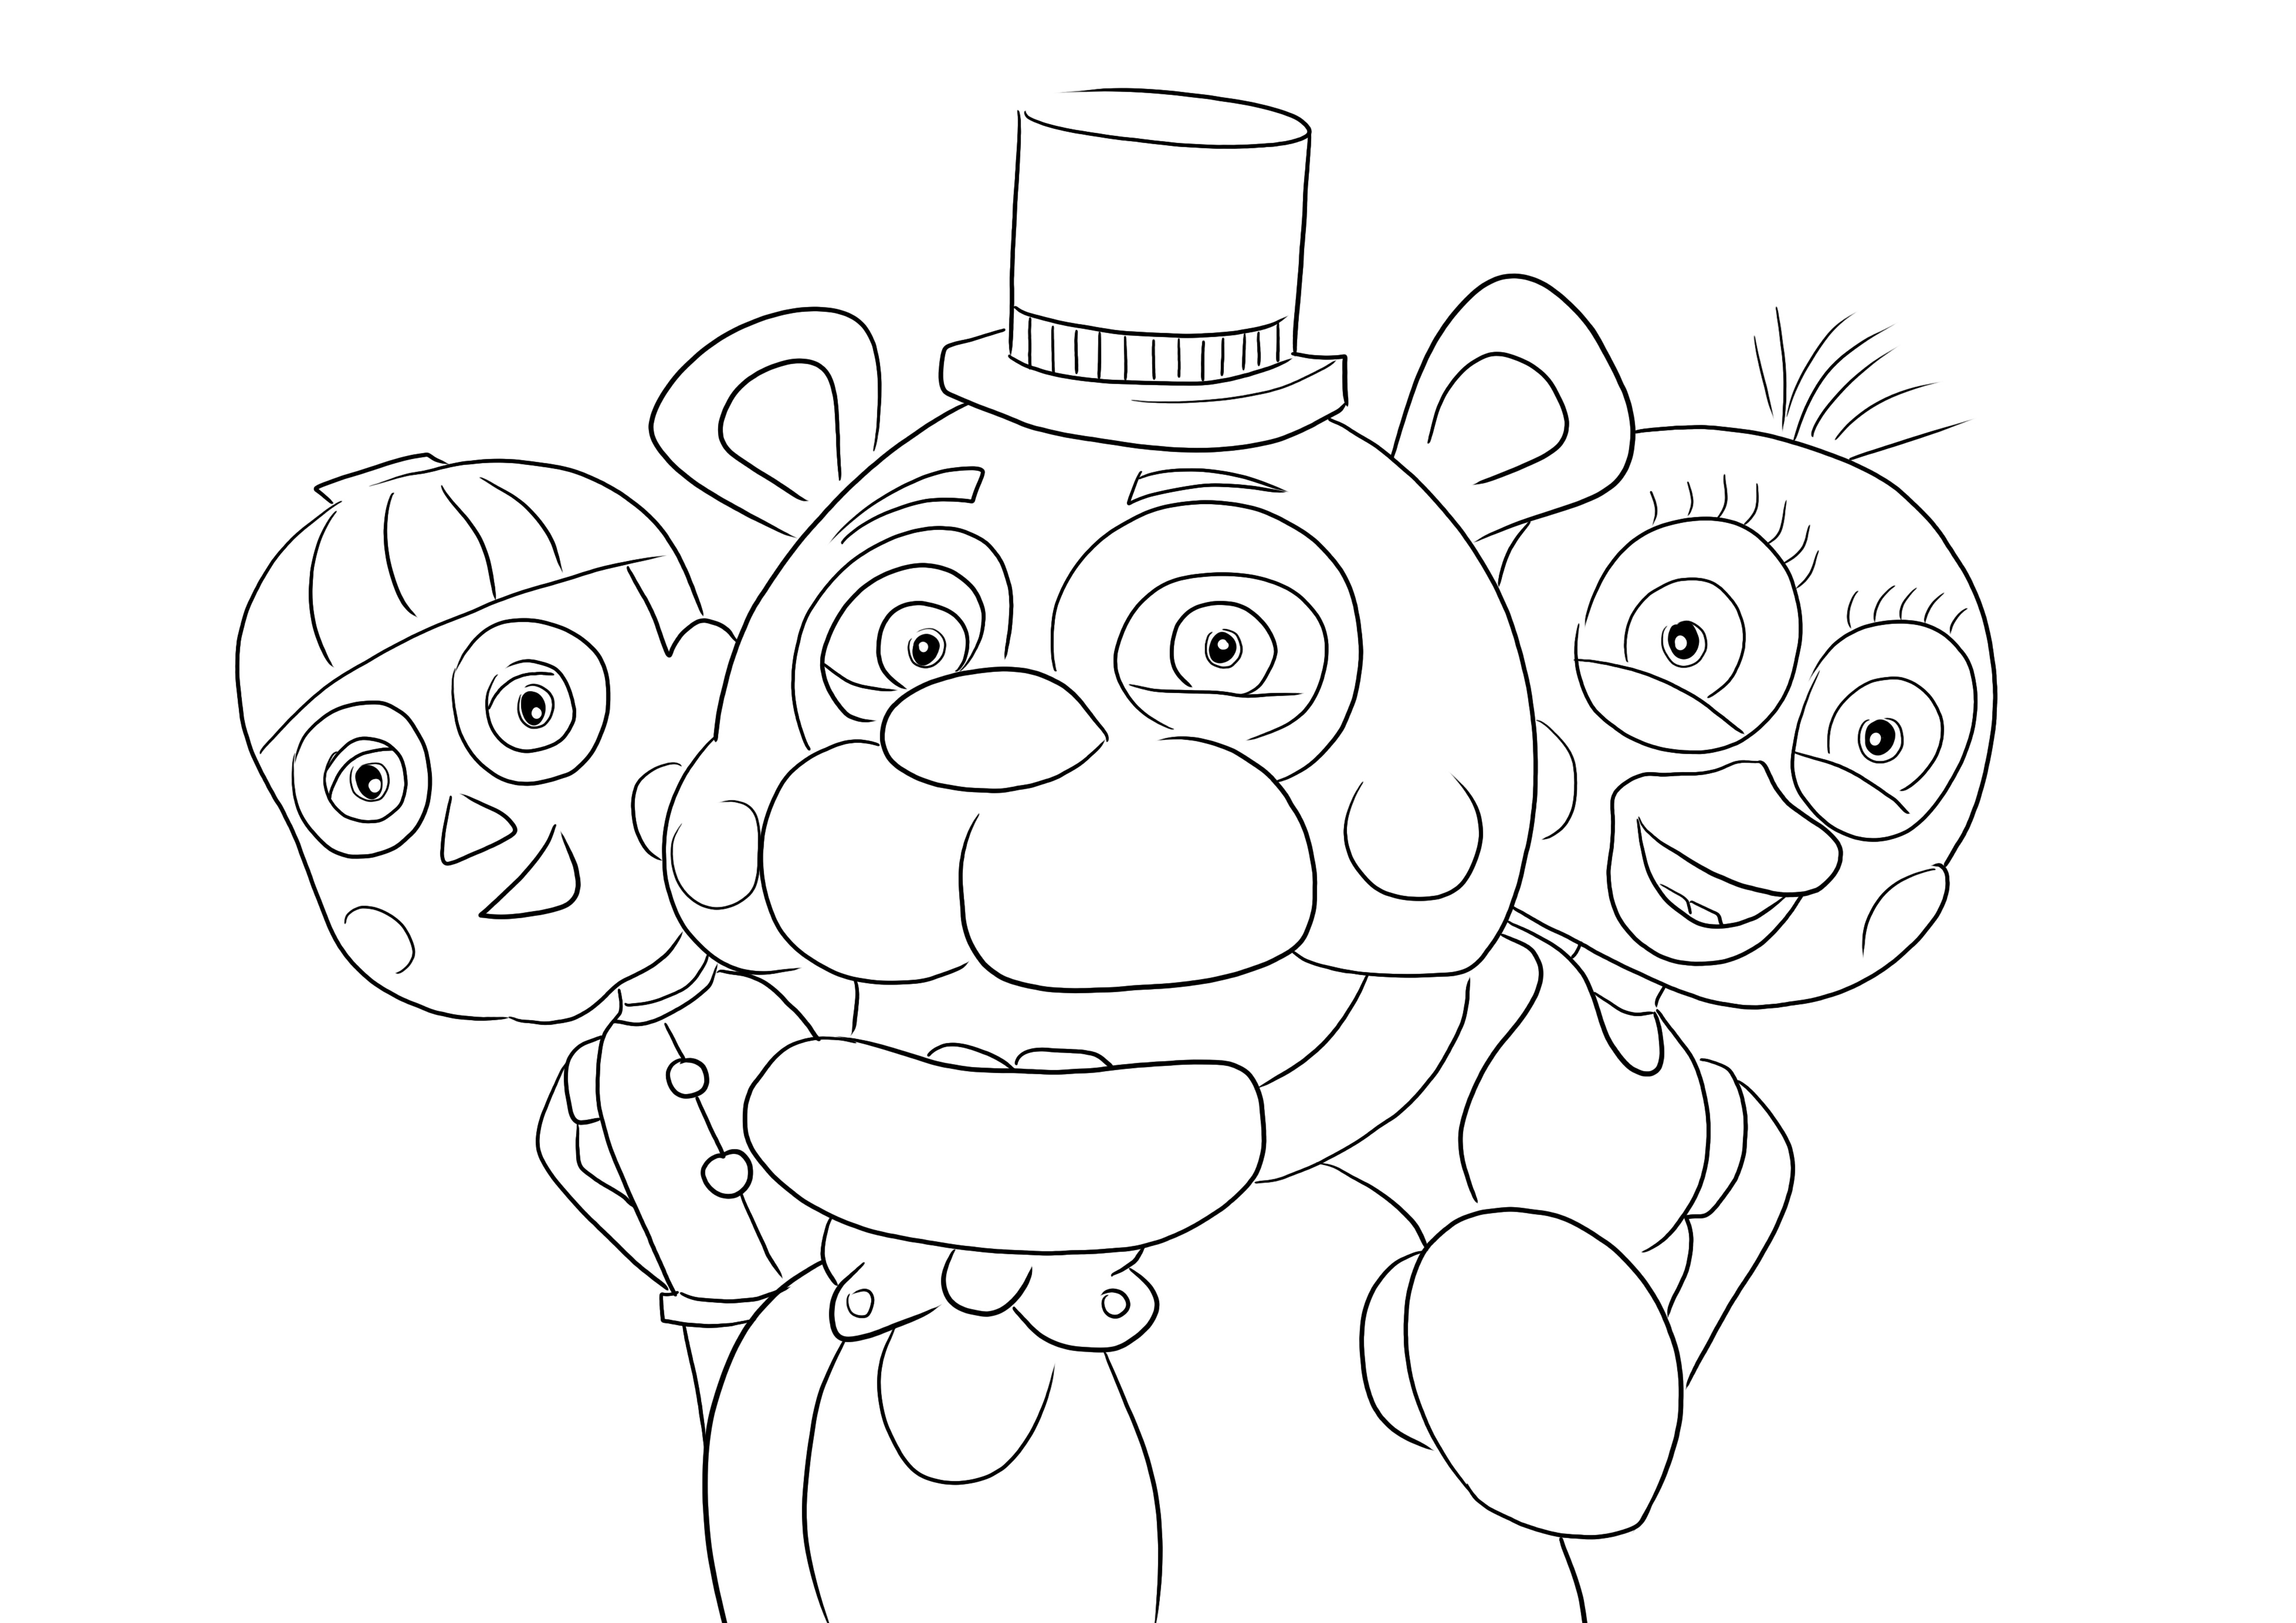 Five Nights at Freddy's Todos os personagens para colorir para impressão fácil e gratuita